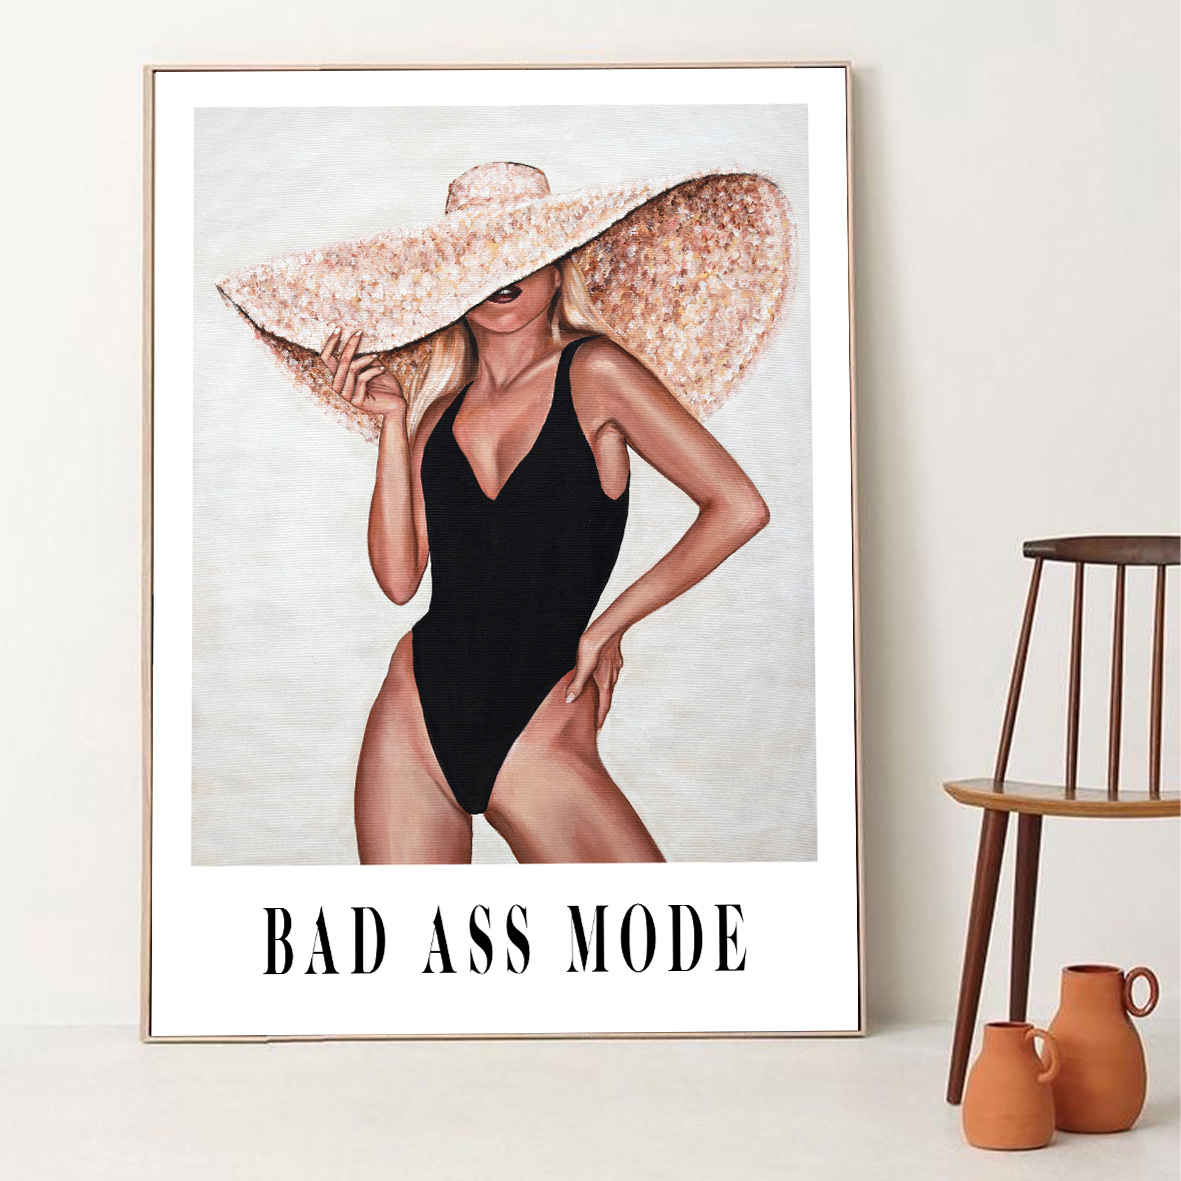 Bad Ass Mode (titel)